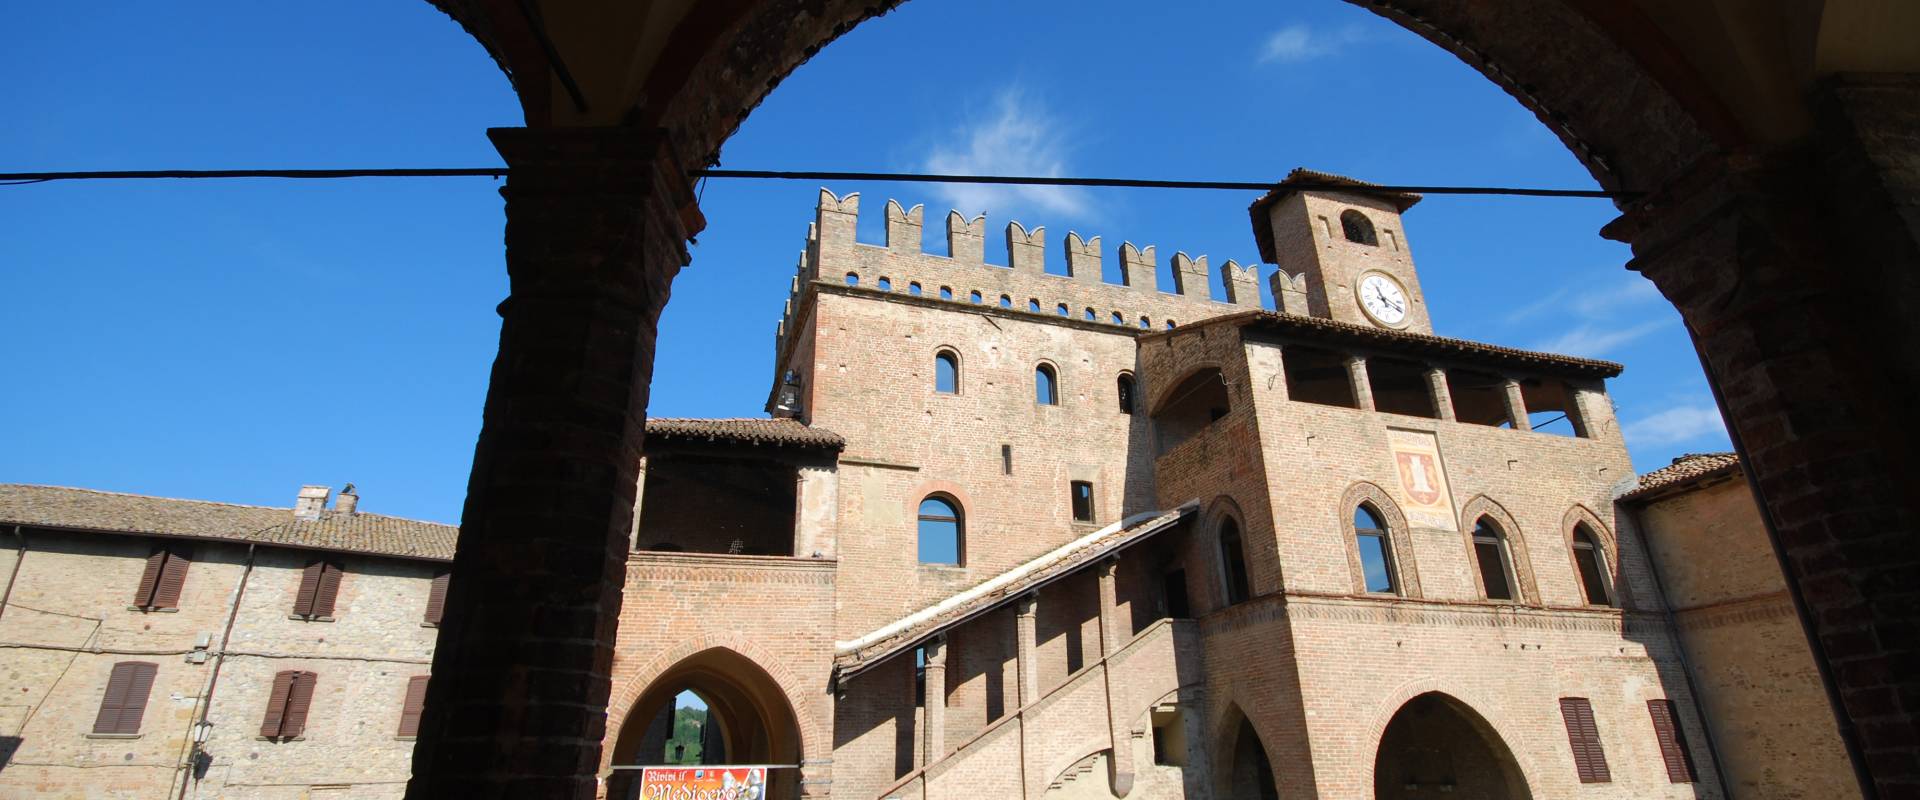 Castell'Arquato-Palazzo del Podestà photo by Massimo Telò